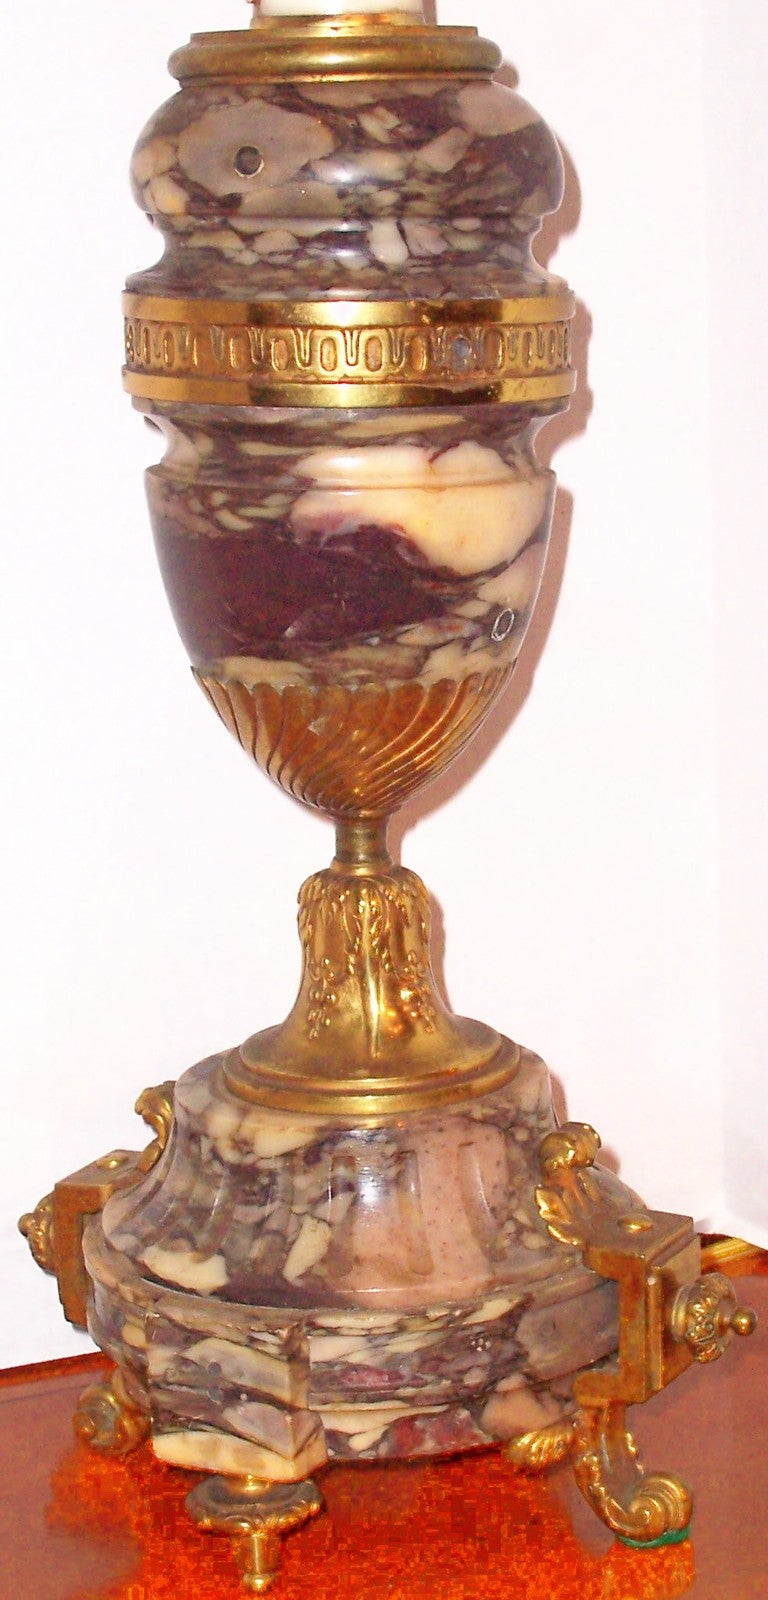 La grande urne en marbre tourné est ornée d'un tourbillon de crème et de différentes nuances de pourpre, de lavande et de violet. Probablement avec des poignées à l'origine, maintenant enlevées et les trous remplis. 

14 pouces de hauteur jusqu'au